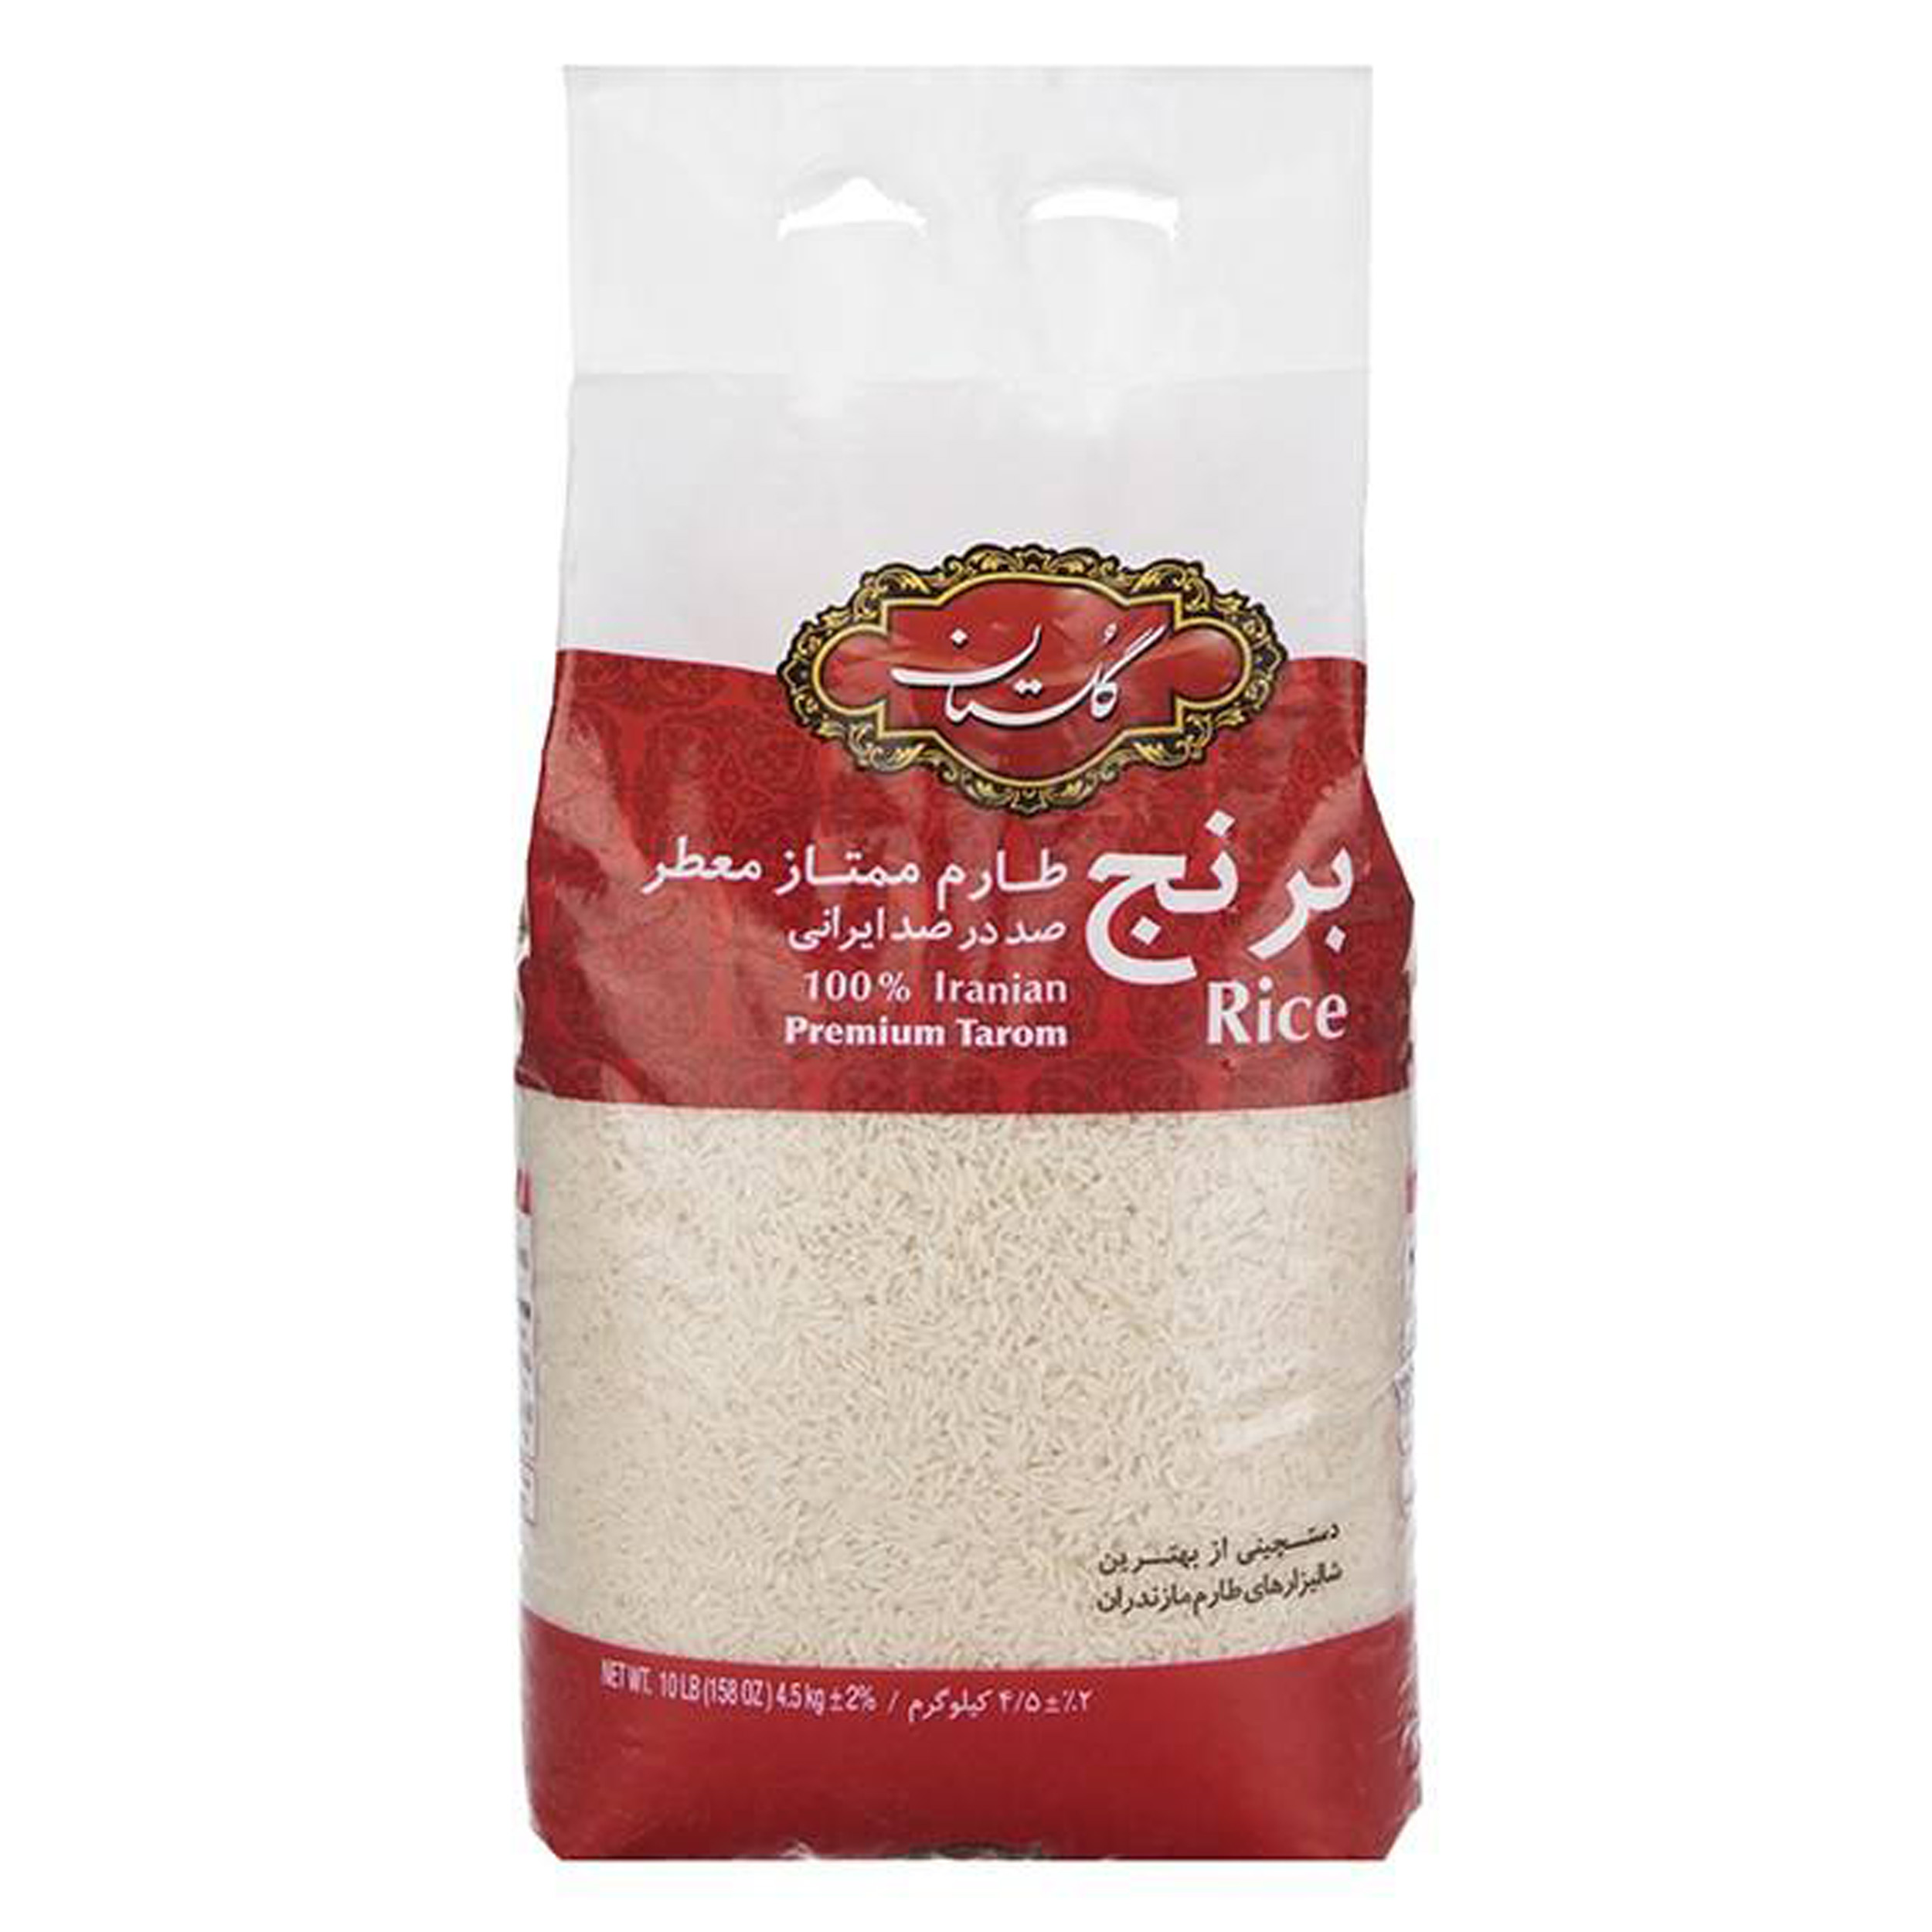 نکته خرید - قیمت روز برنج طارم ممتاز گلستان - 4.5 کیلوگرم خرید